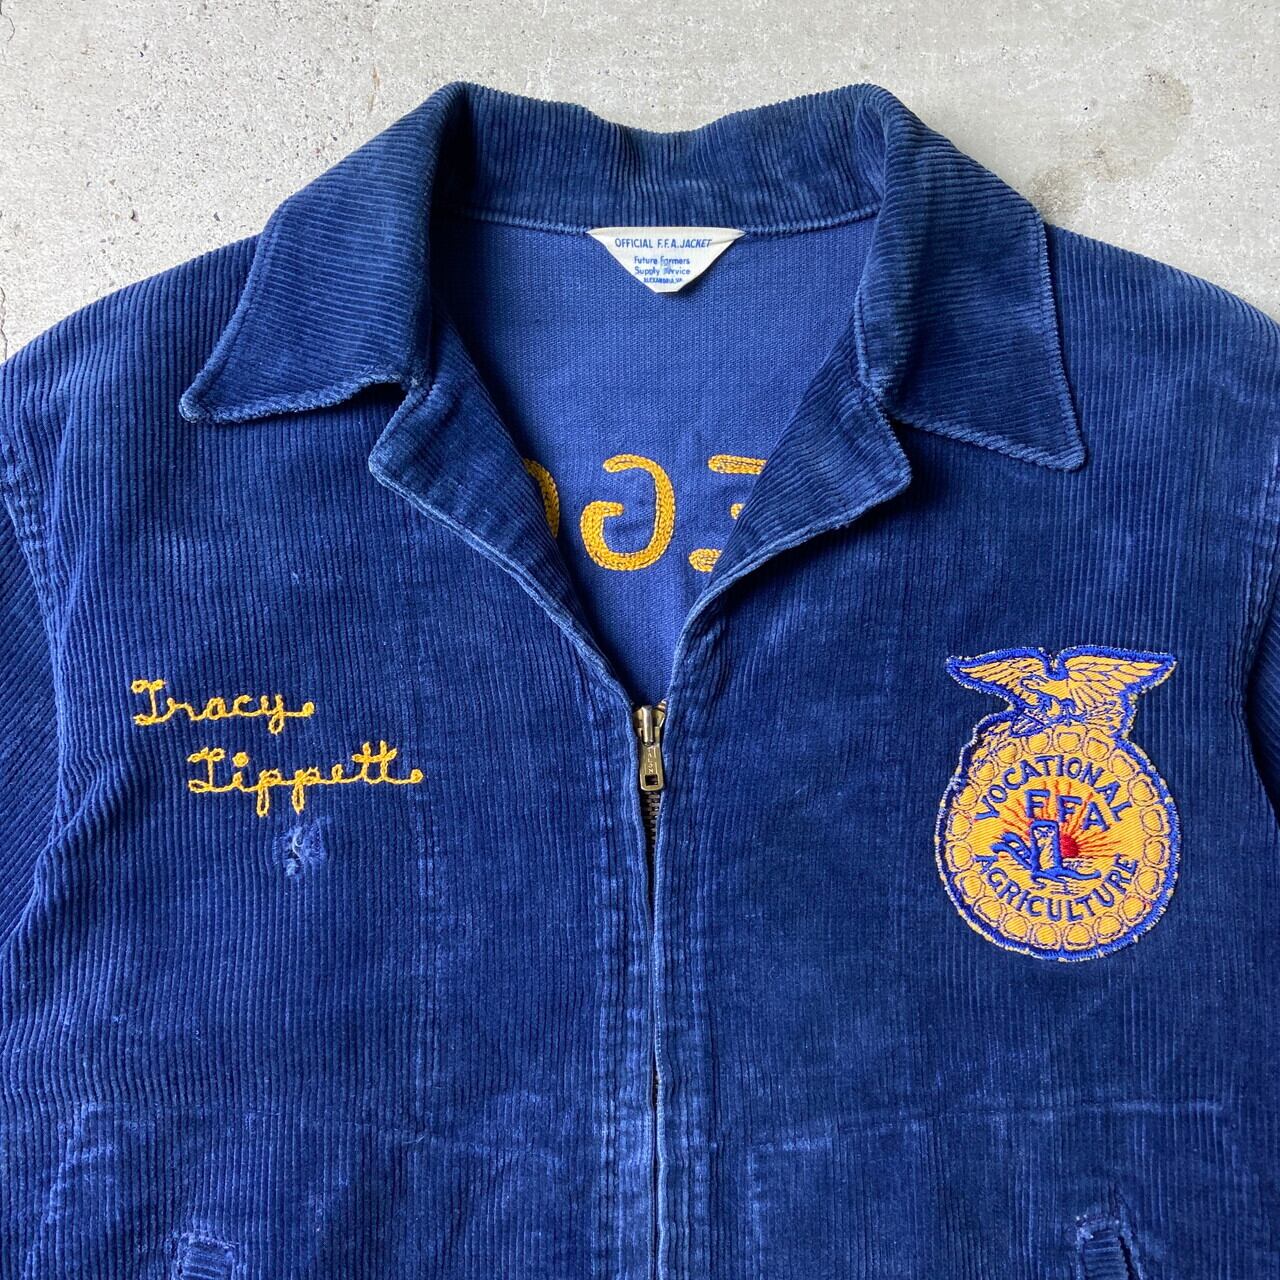 60〜70年代 FFA アメリカ国立農業学校 ファーマーズジャケット メンズ